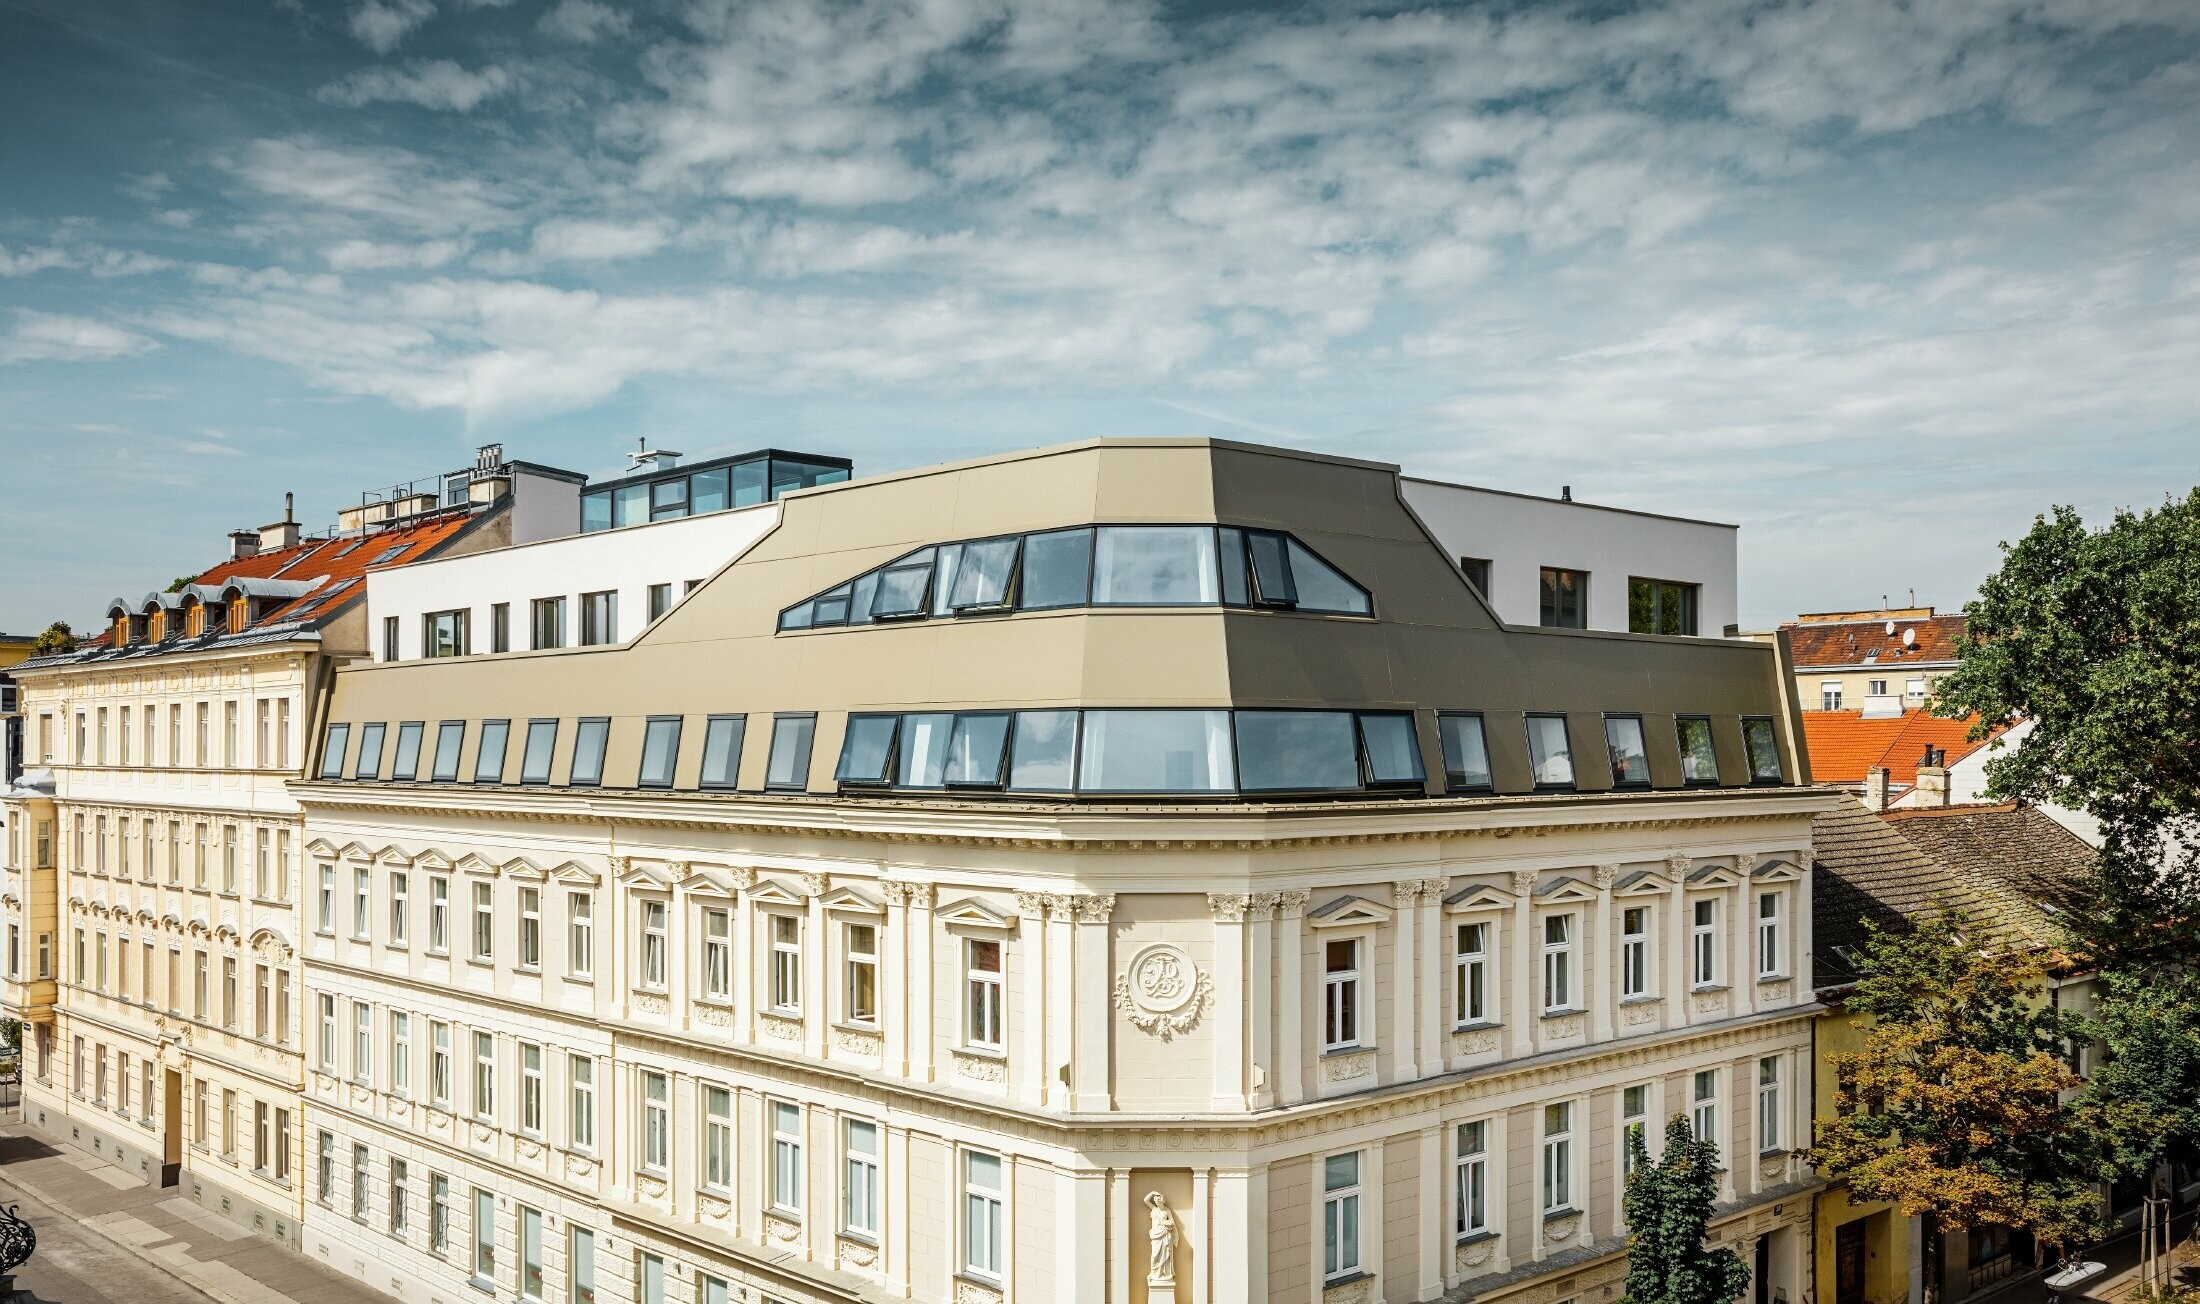 Rozbudowa powierzchni dachowej na ulicy Schloßhofer Straße w Wiedniu z użyciem aluminiowej płyty kompozytowej PREFA w kolorze brązu